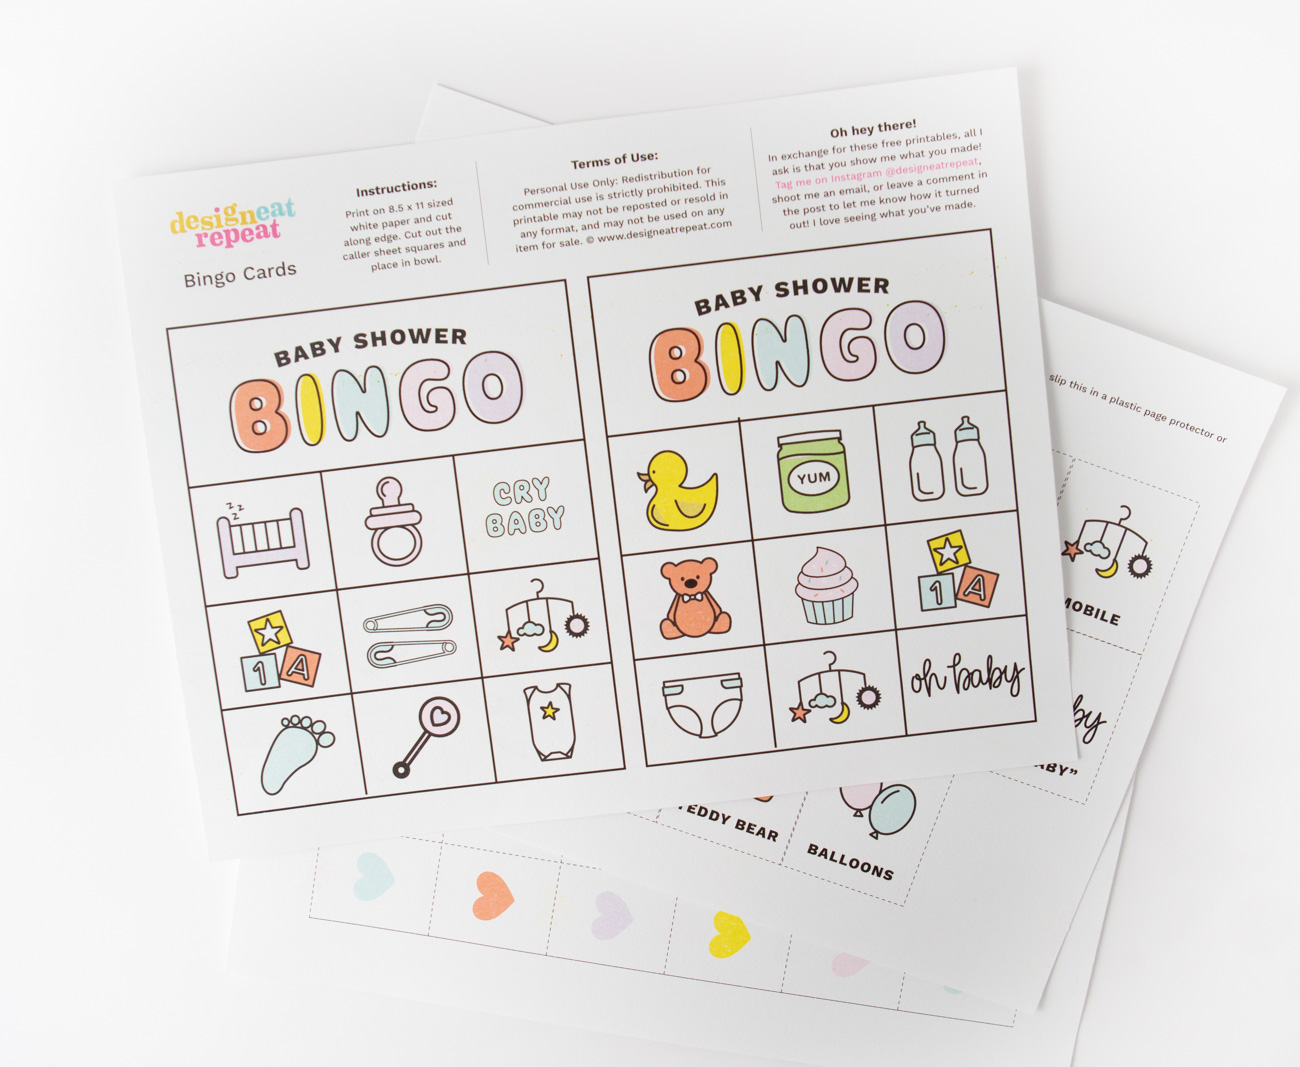 Printed sheet of baby shower bingo cardsa